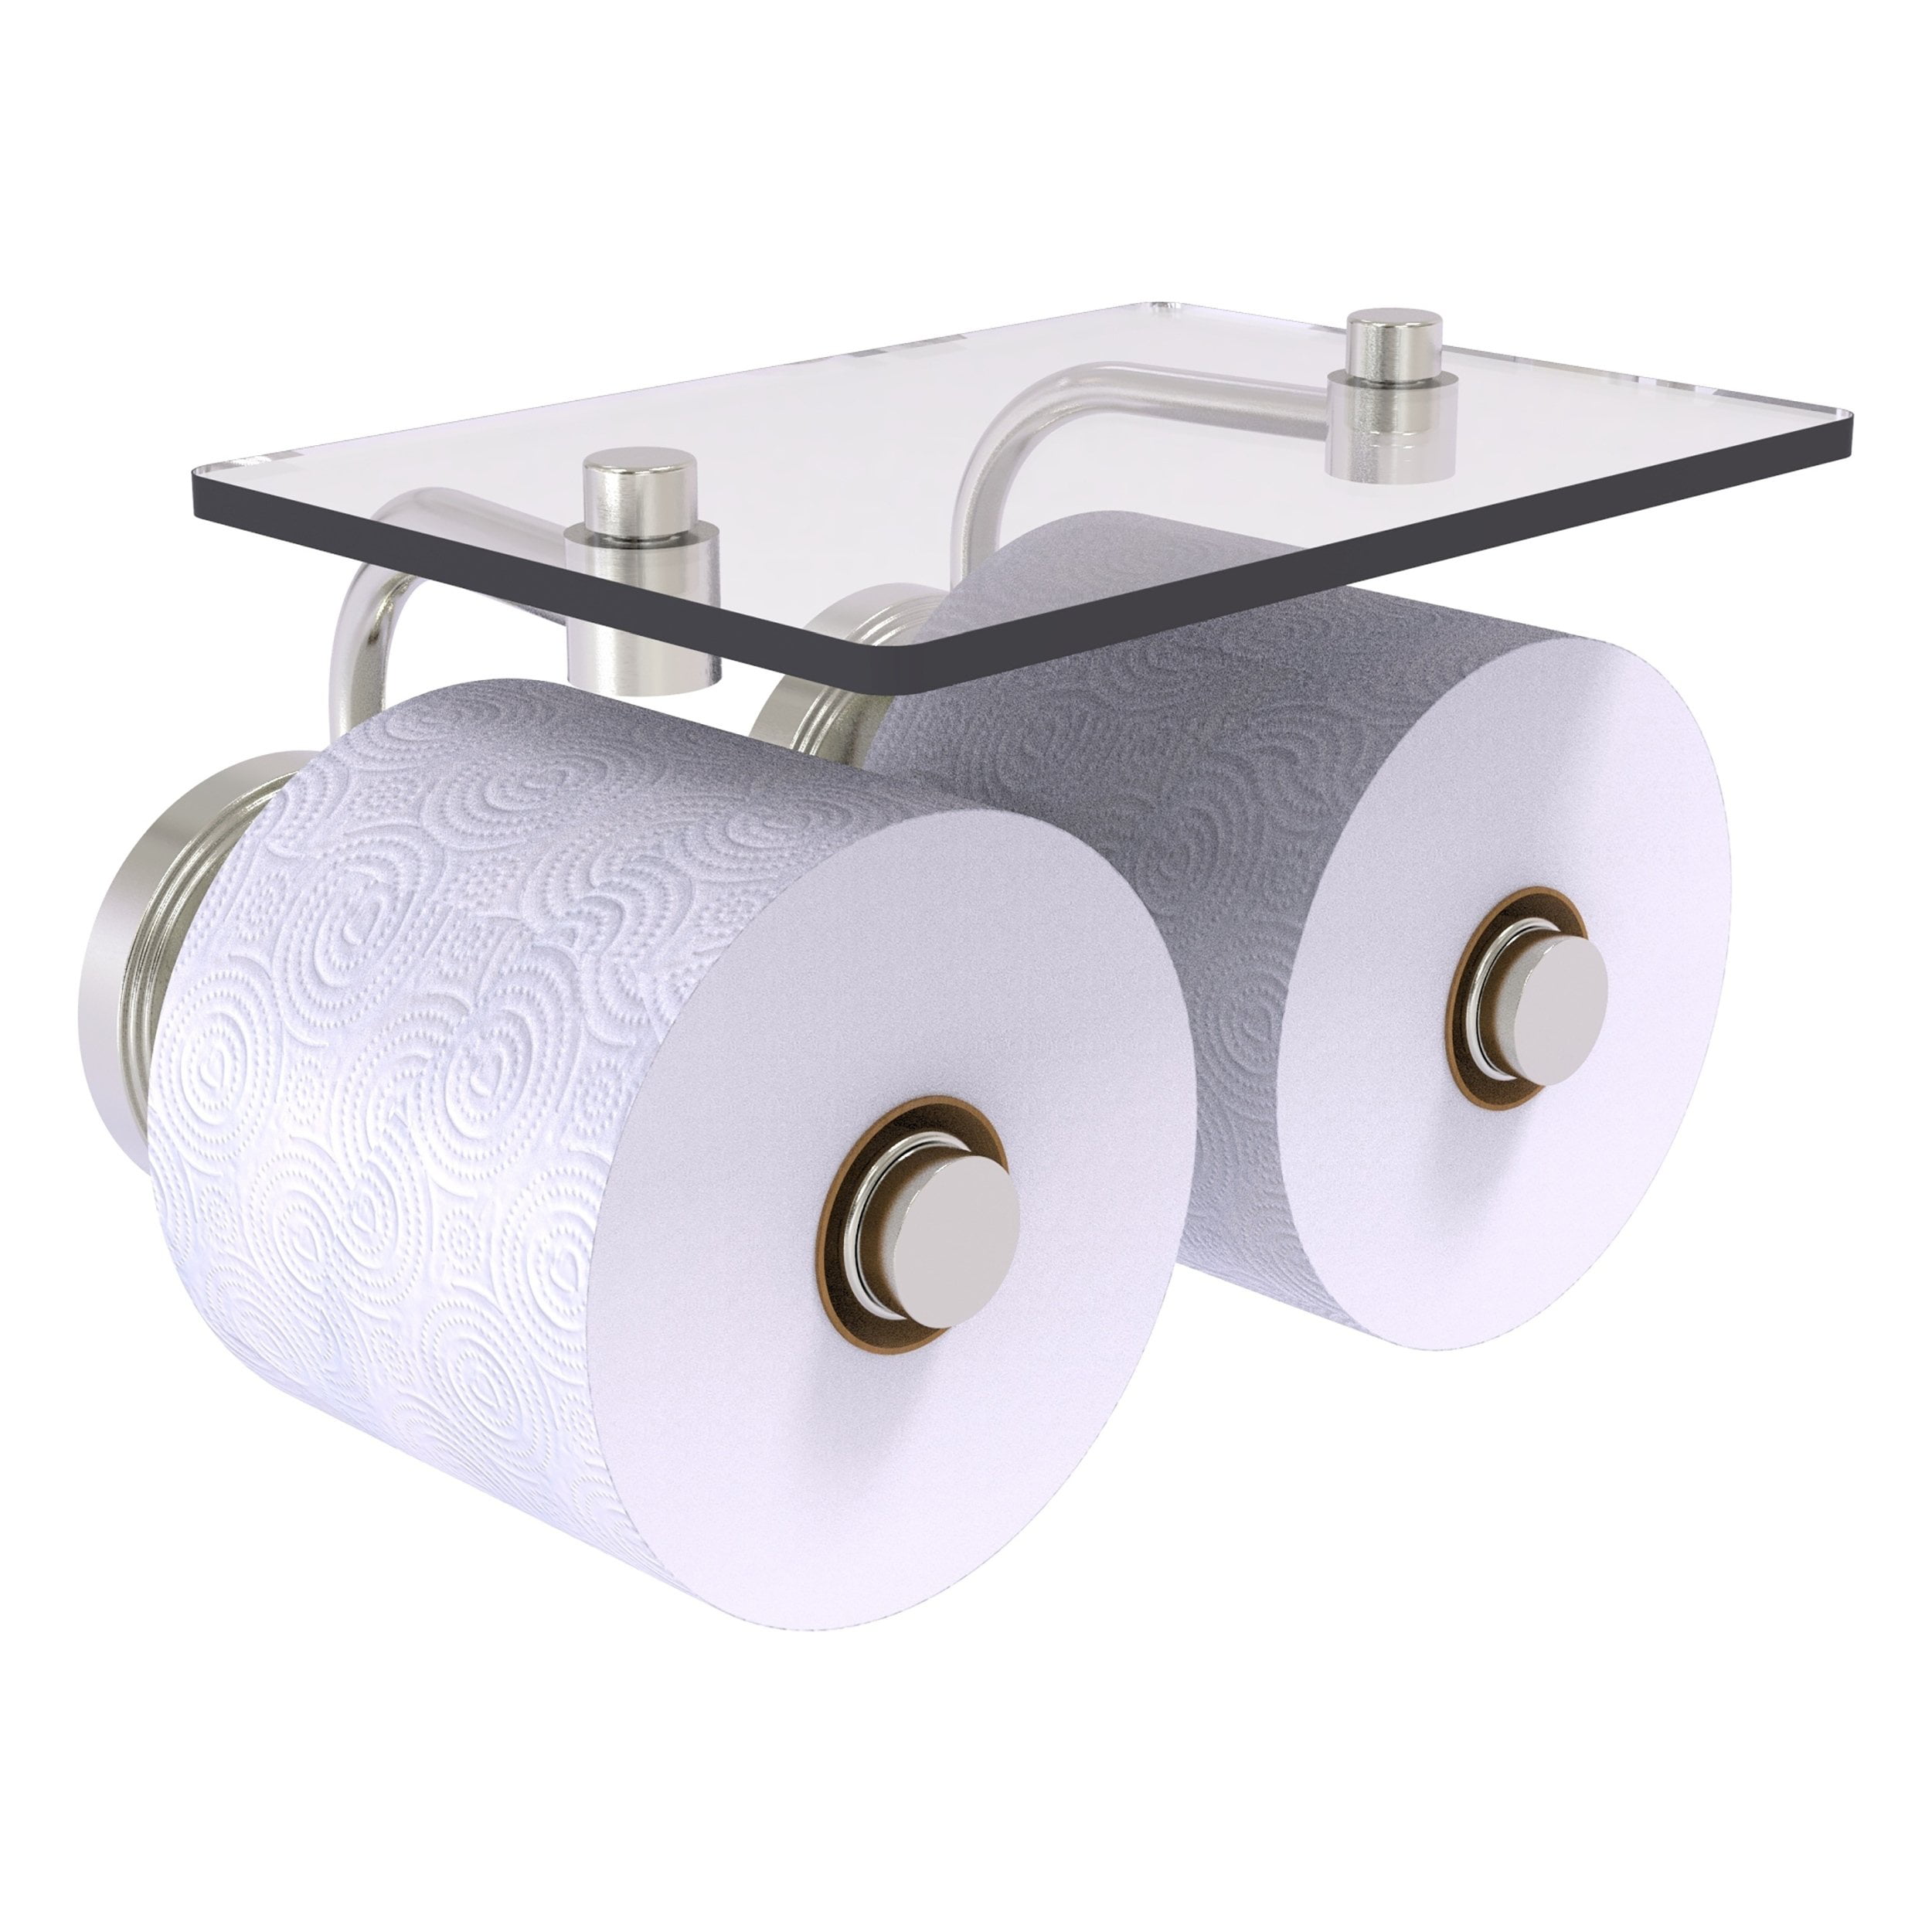 Interdesign 62170 York Lyra Polished Chrome Over Tank Toilet Tissue Paper Plus 